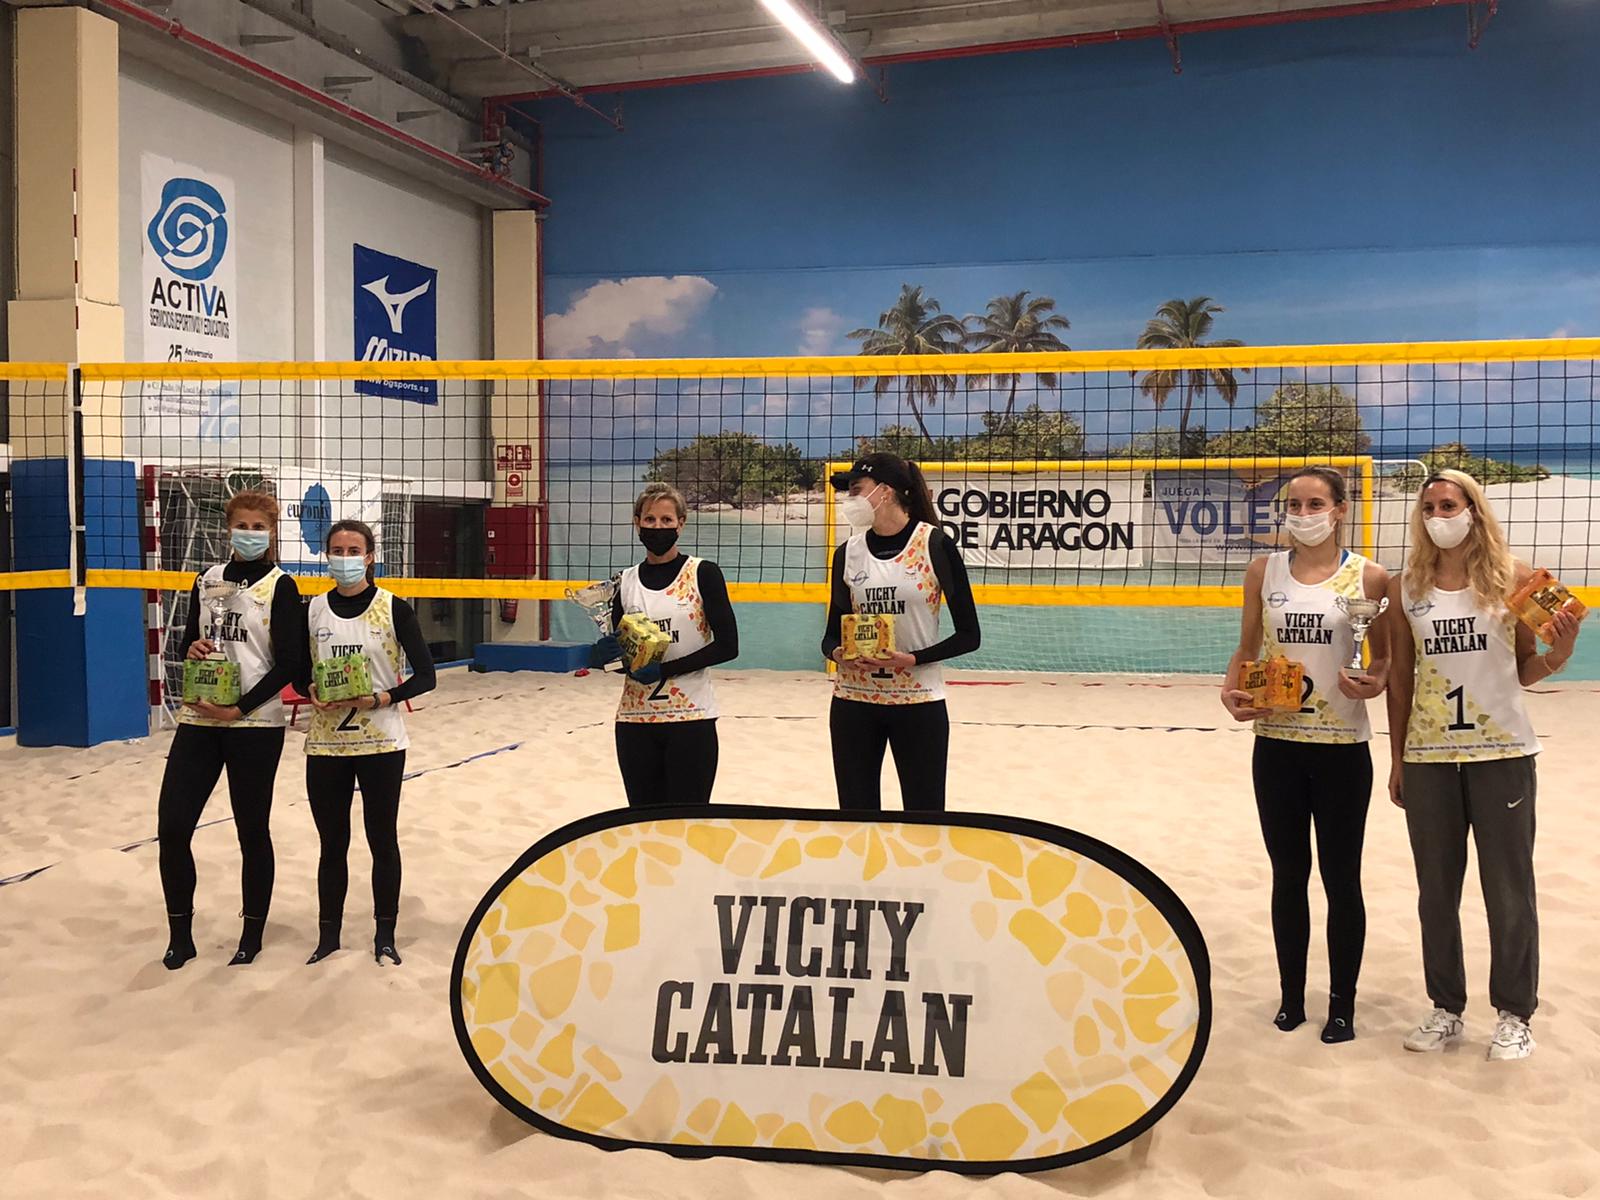 Voley Playa Majadahonda: Olga Matveeva y Ania Esarte vuelven a triunfar en Zaragoza con Mayra Vasquez y Sibhond Nicaudie quintas